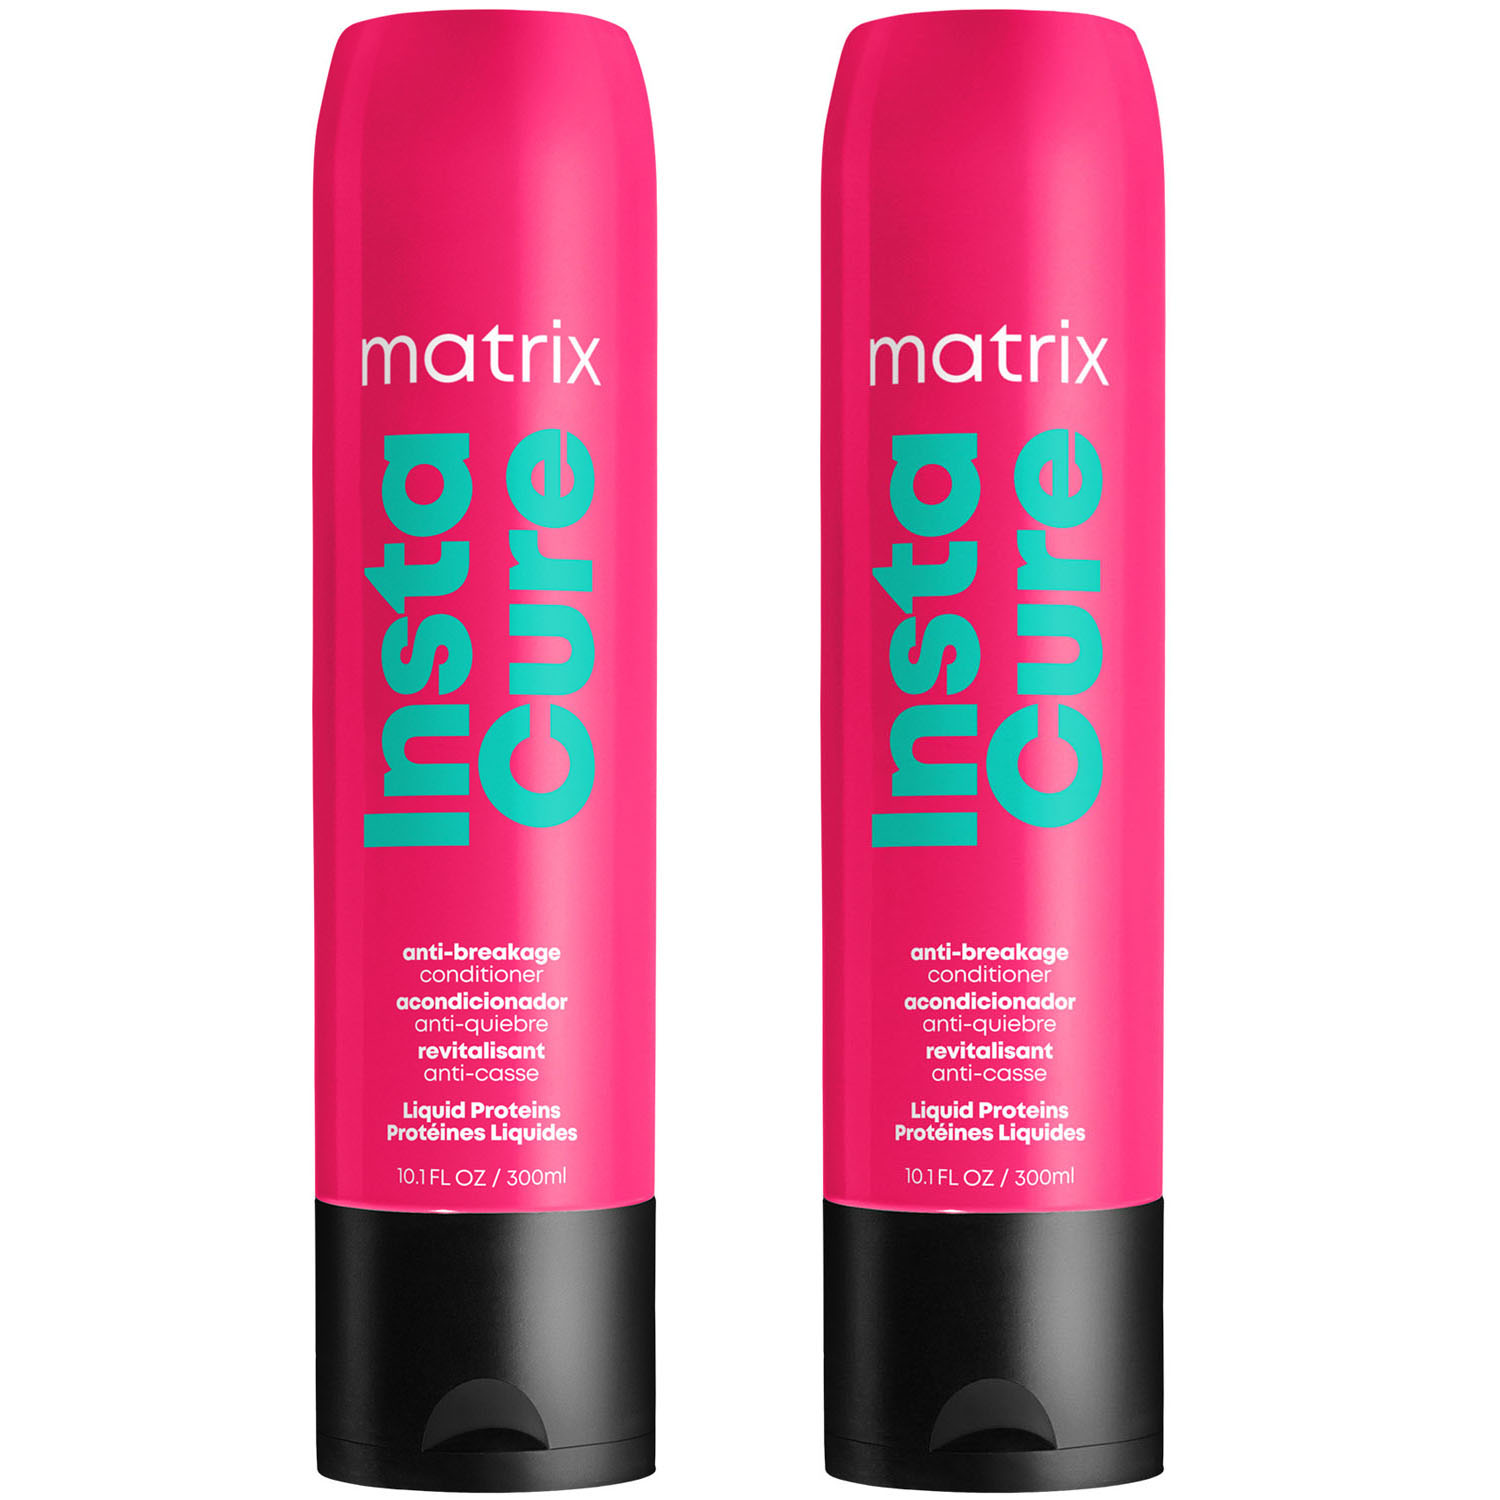 Matrix Профессиональный кондиционер Instacure для восстановления волос с жидким протеином, 300 мл х 2 шт (Matrix, Total Results) шампунь против ломкости instacure 300 мл